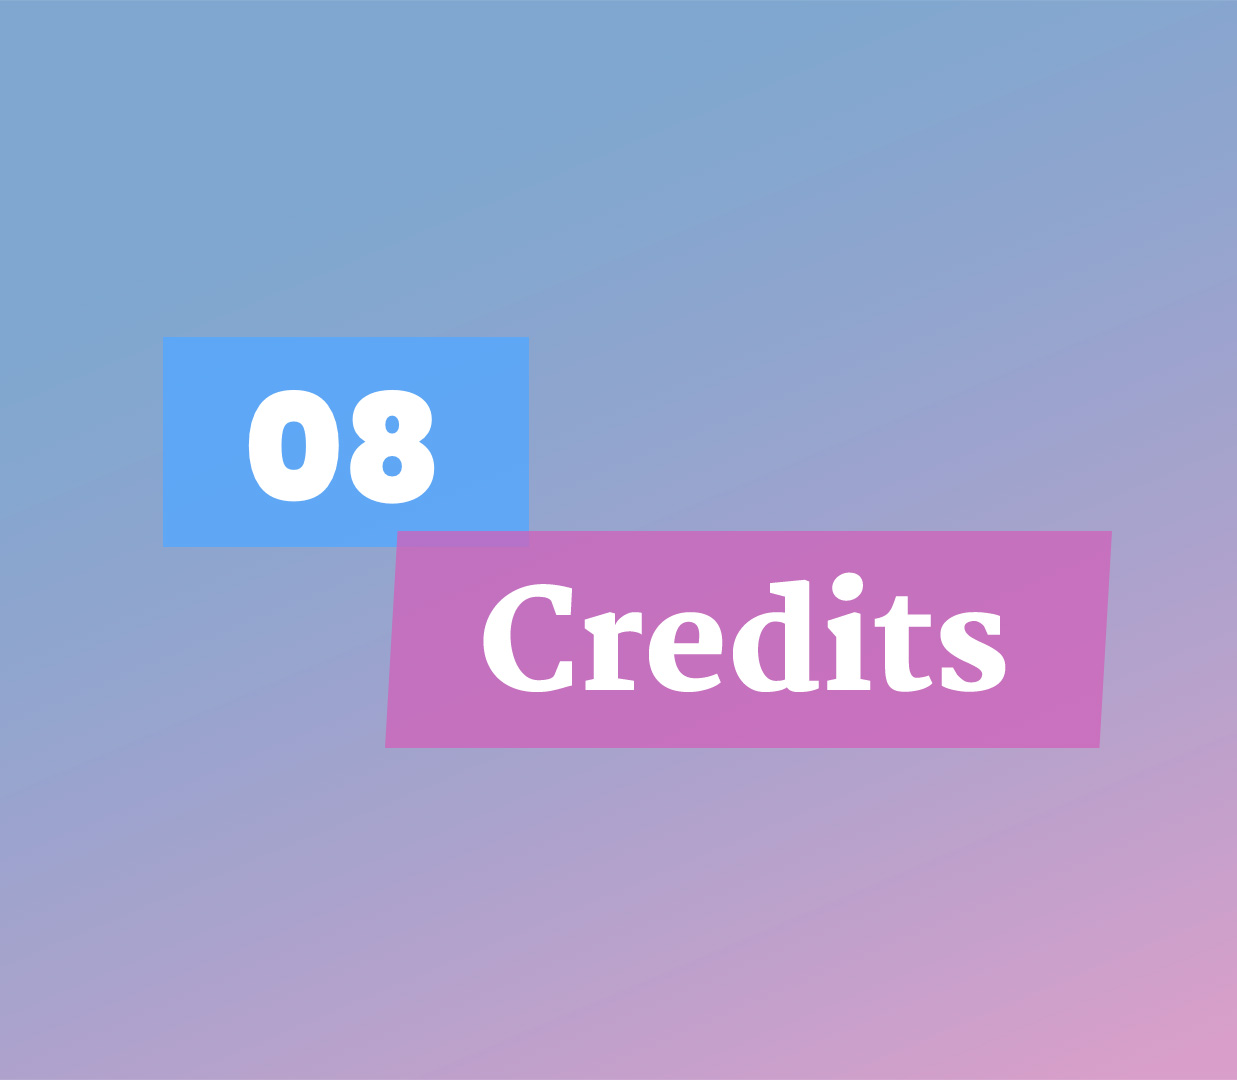 08 Credits